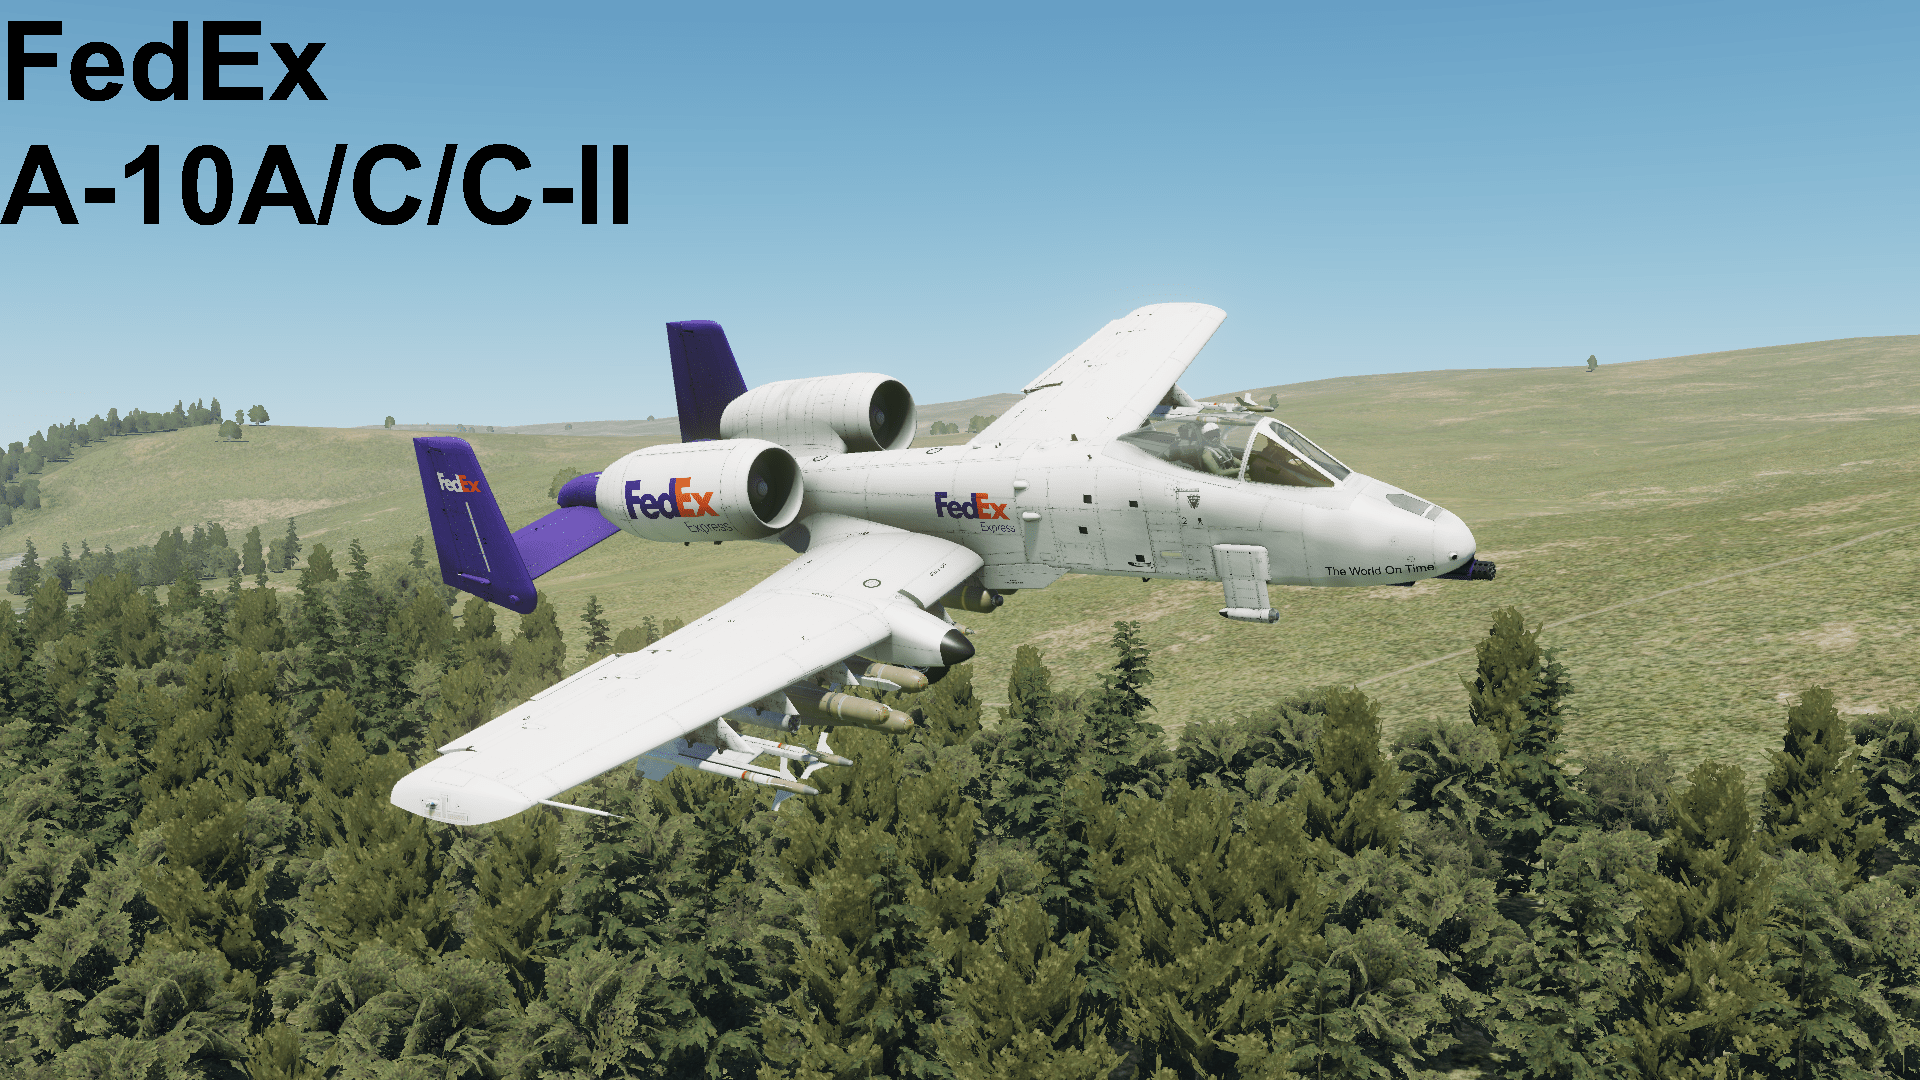 FedEx A-10A/C/C-II